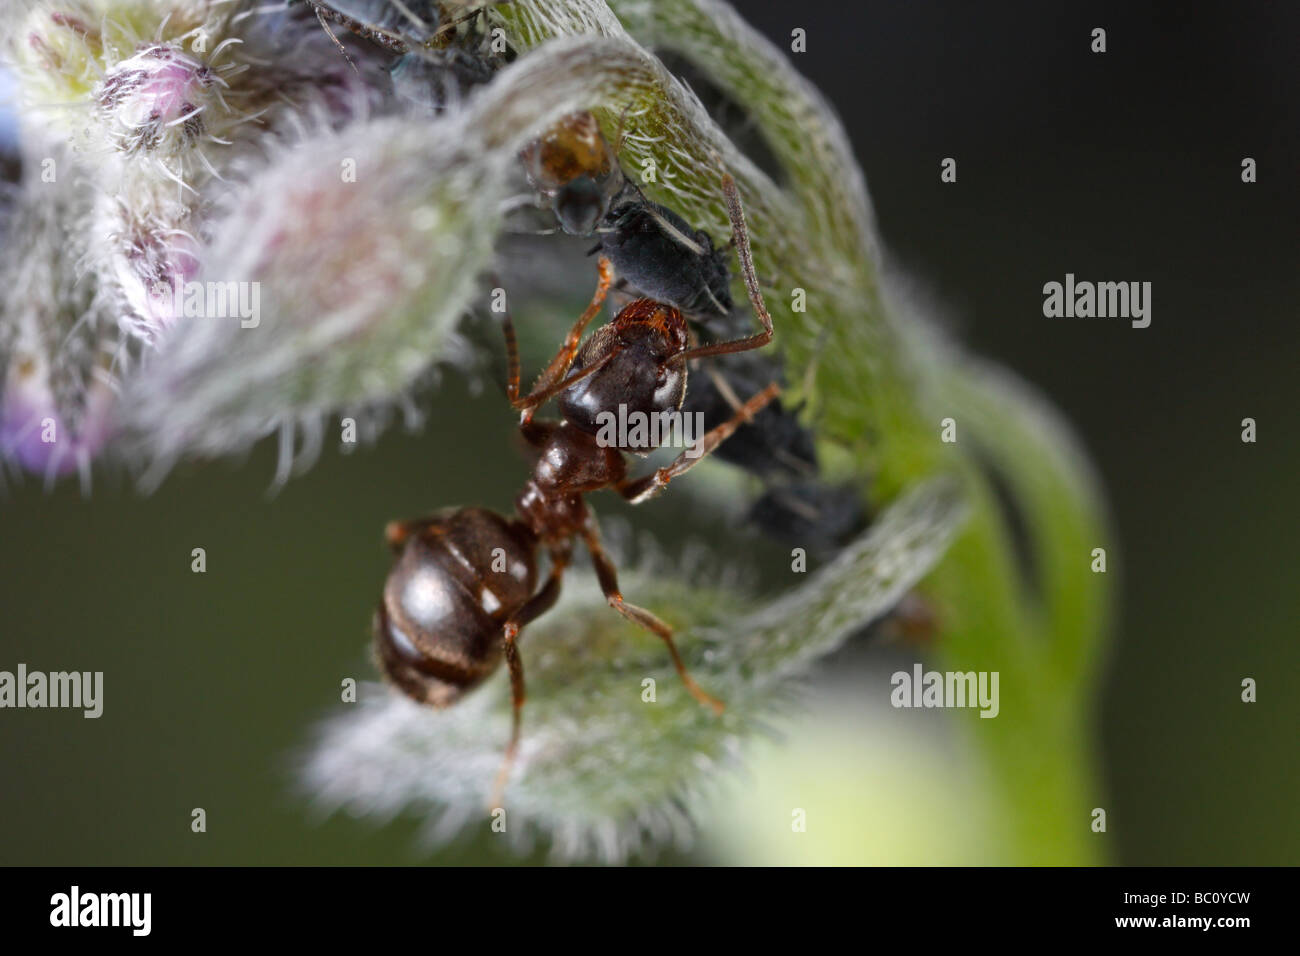 Lasius Niger, der schwarze Garten Ameisen und Blattläuse. Die Ameise ist die Blattläuse Melken. Die Blume ist eine Borretsch oder Stern Blume. Stockfoto